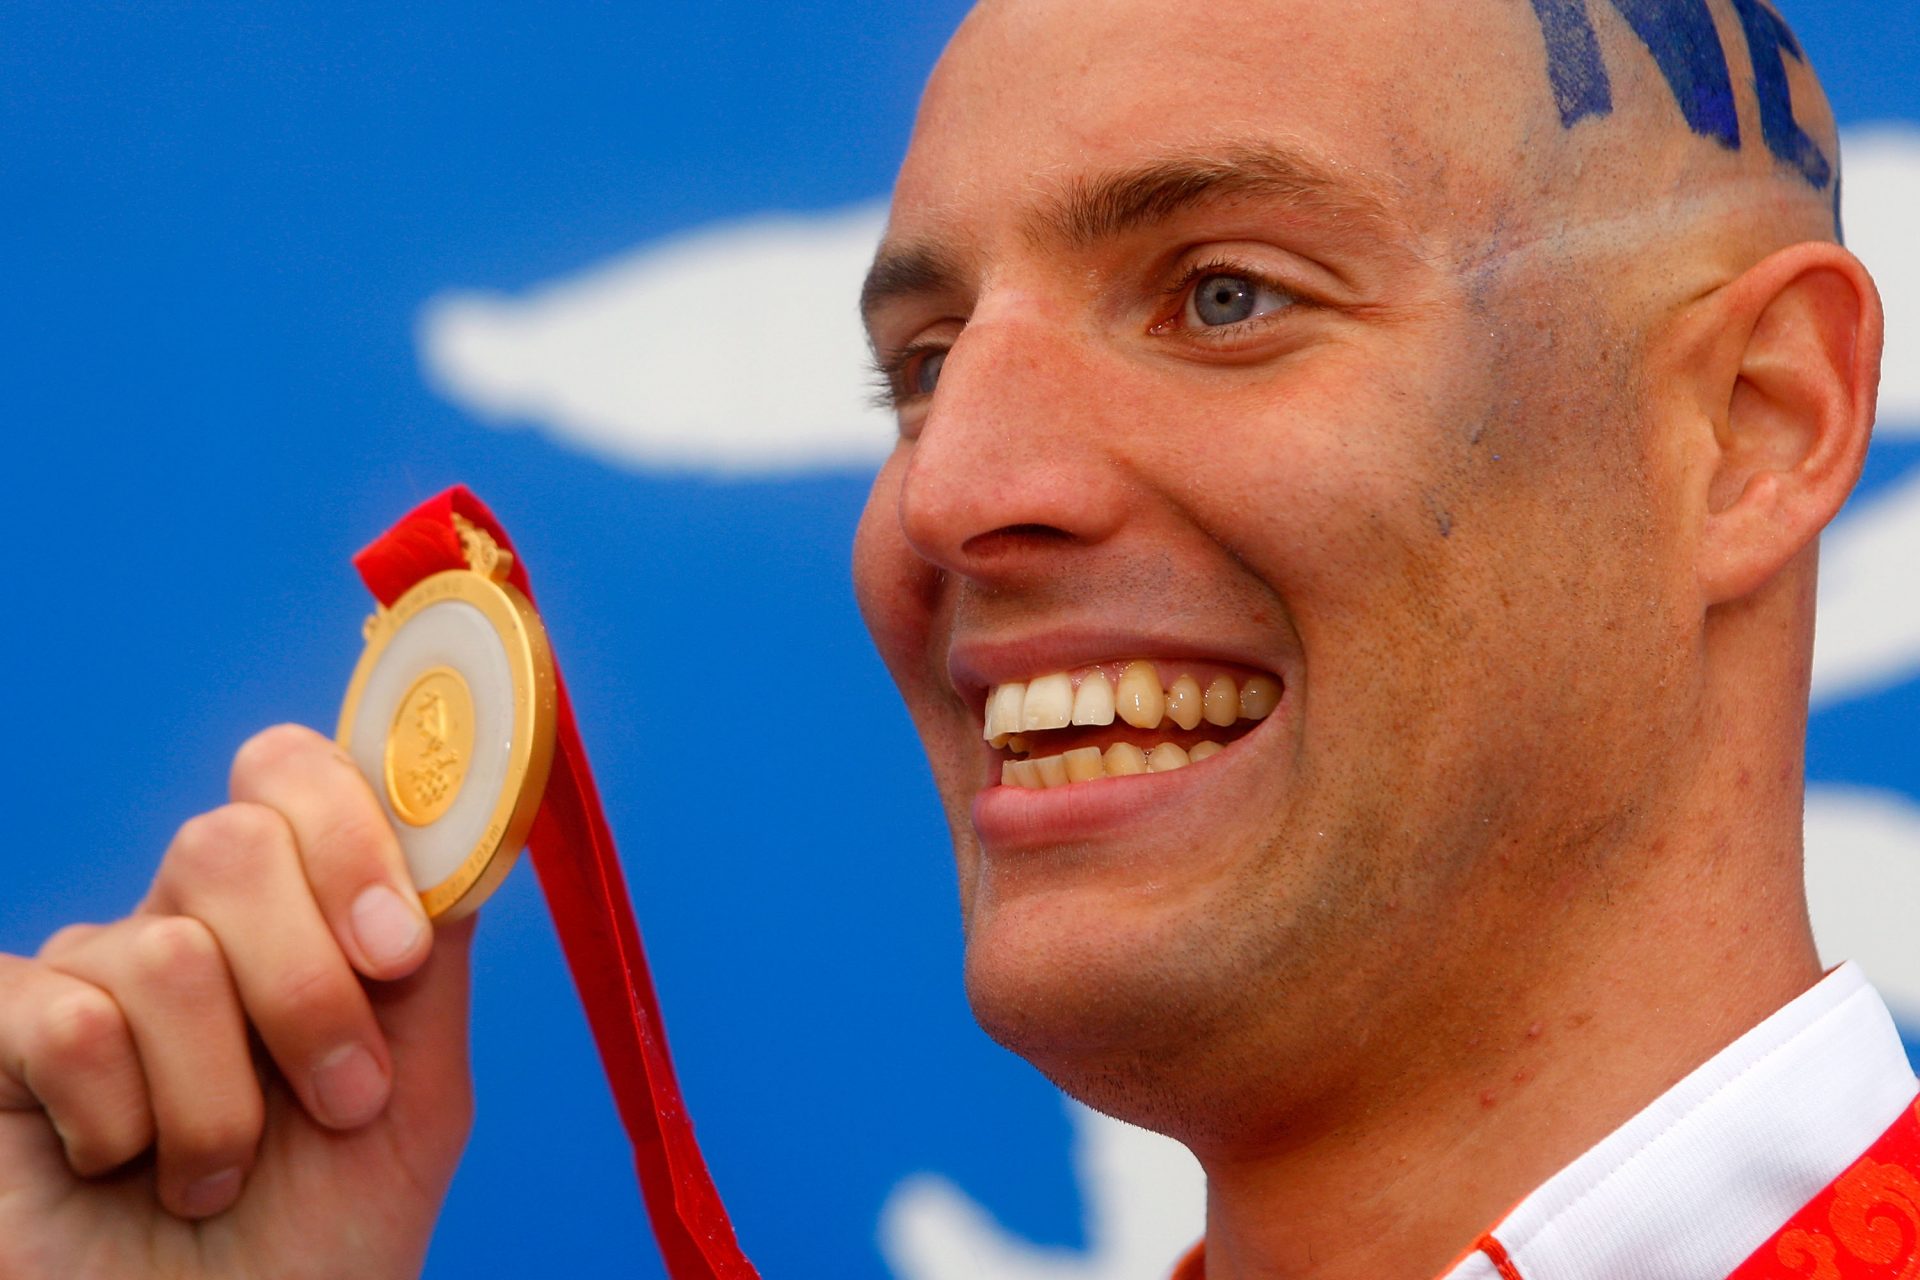 From leukaemia to Olympic gold: the incredible story of Dutch swimmer Maarten van der Weijden